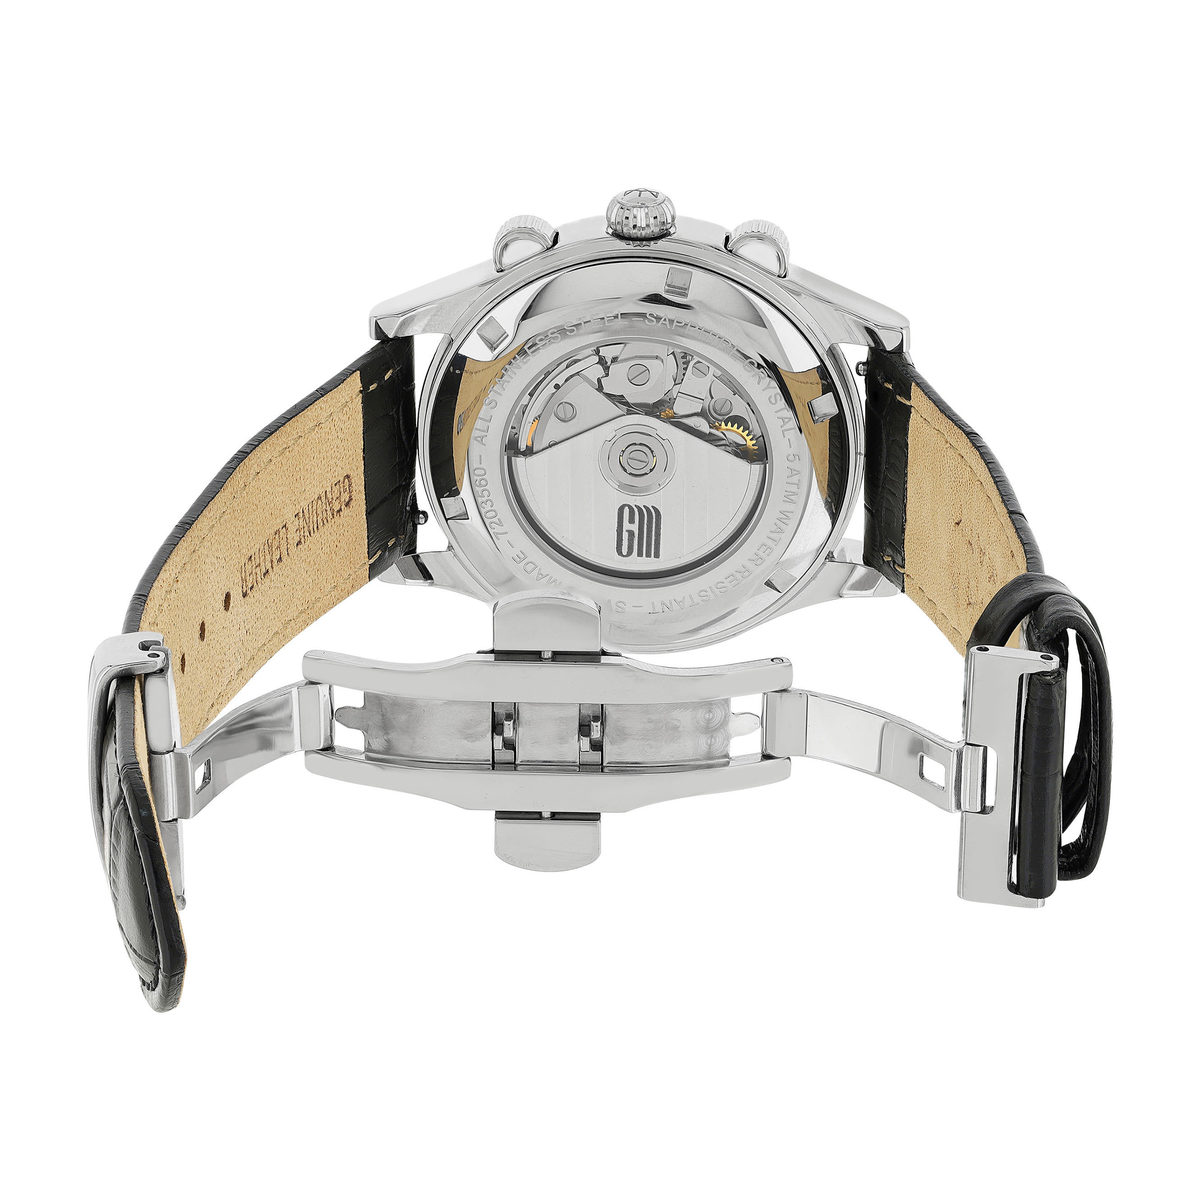 Montre MATY GM automatique chronographe cadran noir bracelet cuir noir - vue 4